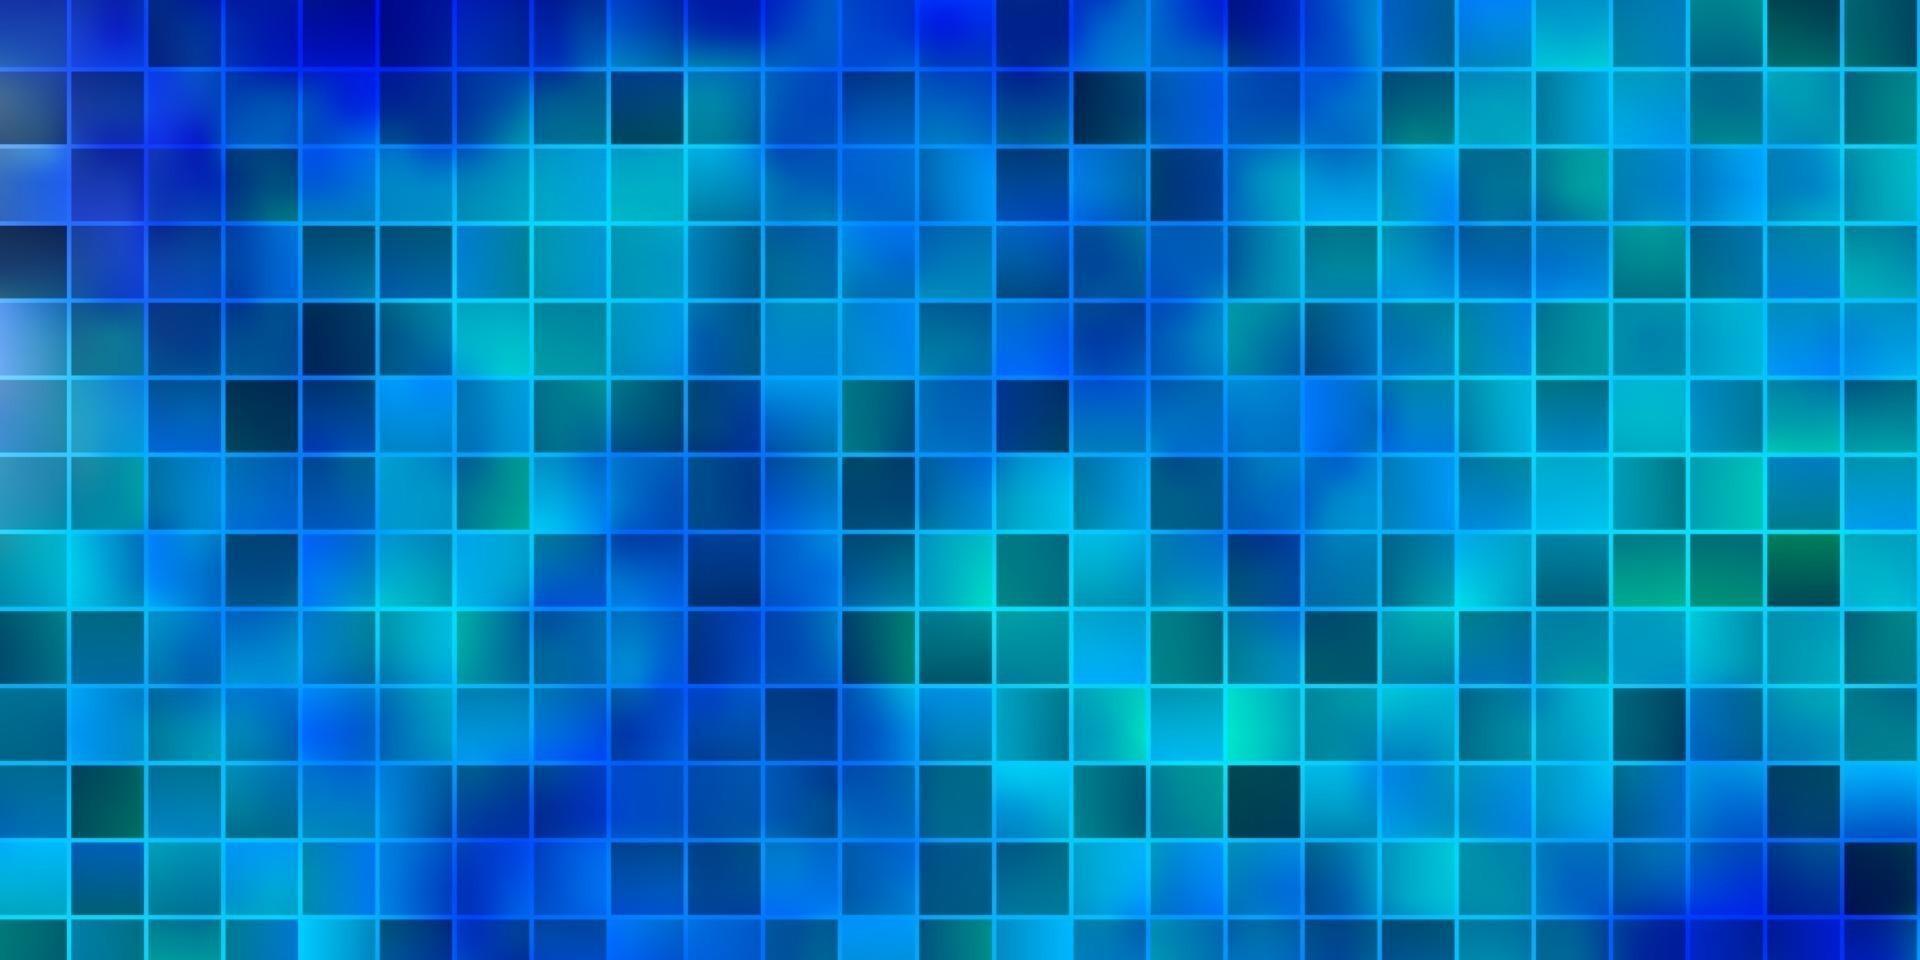 ljusblå vektorlayout med linjer, rektanglar. vektor